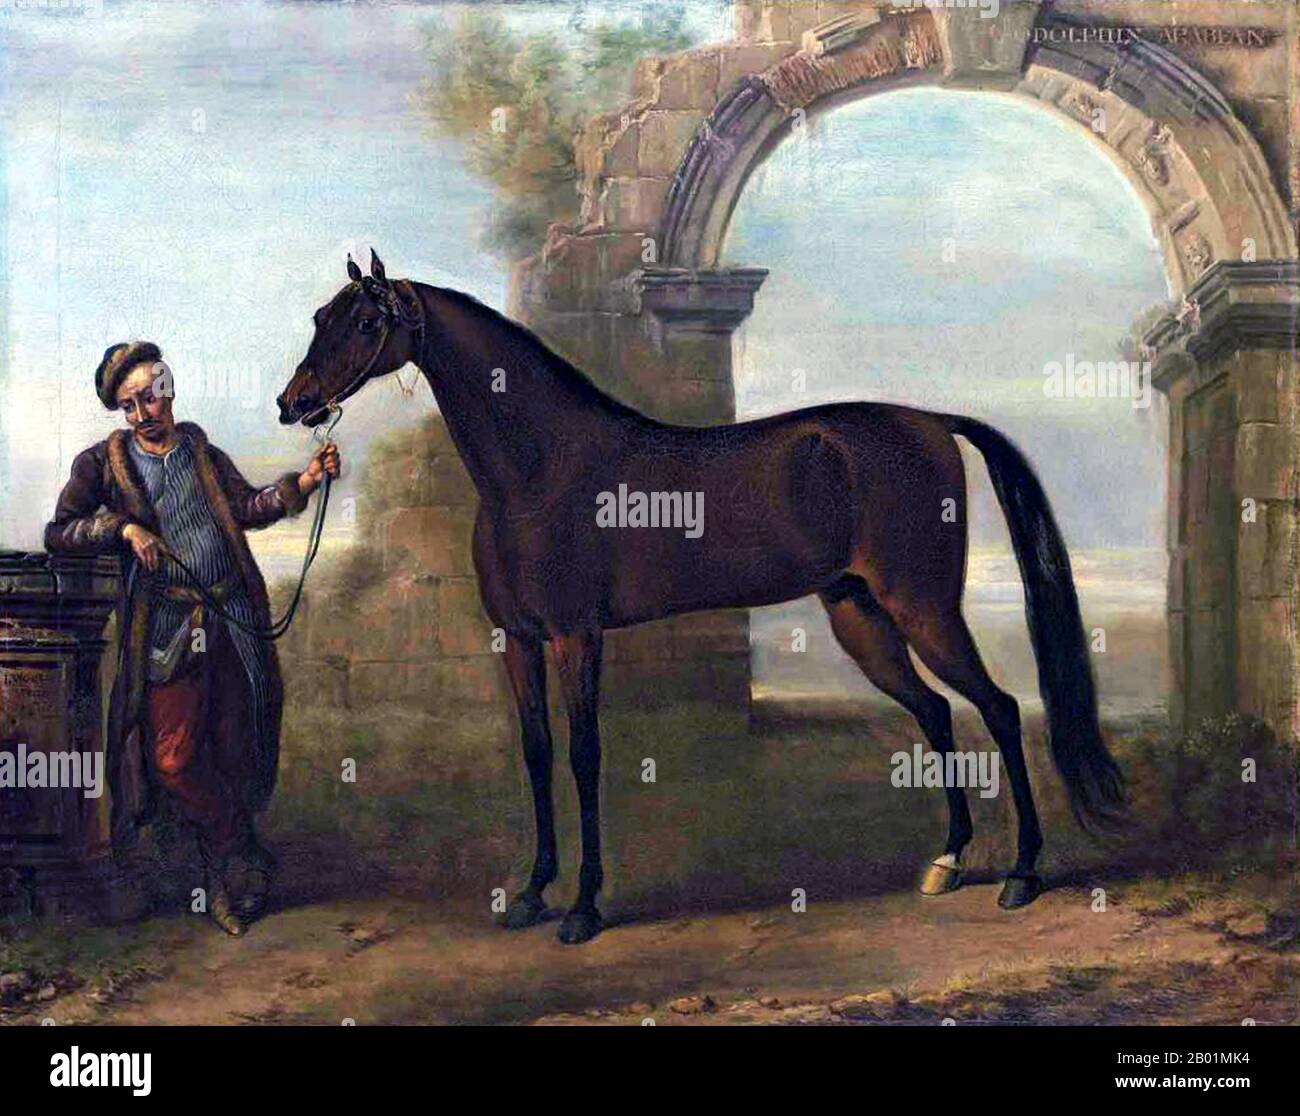 Regno Unito: "The Godolphin Arab, held by a Groom, in a Landscape with a Ruined Arch". Olio su tela dipinto di John Wootton (c. 1682-1764), 1731. Il Godolphin Arabian (c. 1724-1753), noto anche come Godolphin Barb, era un cavallo arabo che fu uno dei tre stalloni che furono i fondatori del moderno stock di sangue delle corse di cavalli purosangue (gli altri due sono il Darley Arabian e il Byerley Turk). Gli fu dato il nome del suo più noto proprietario, Francis Godolphin, II conte di Godolphin. Foto Stock